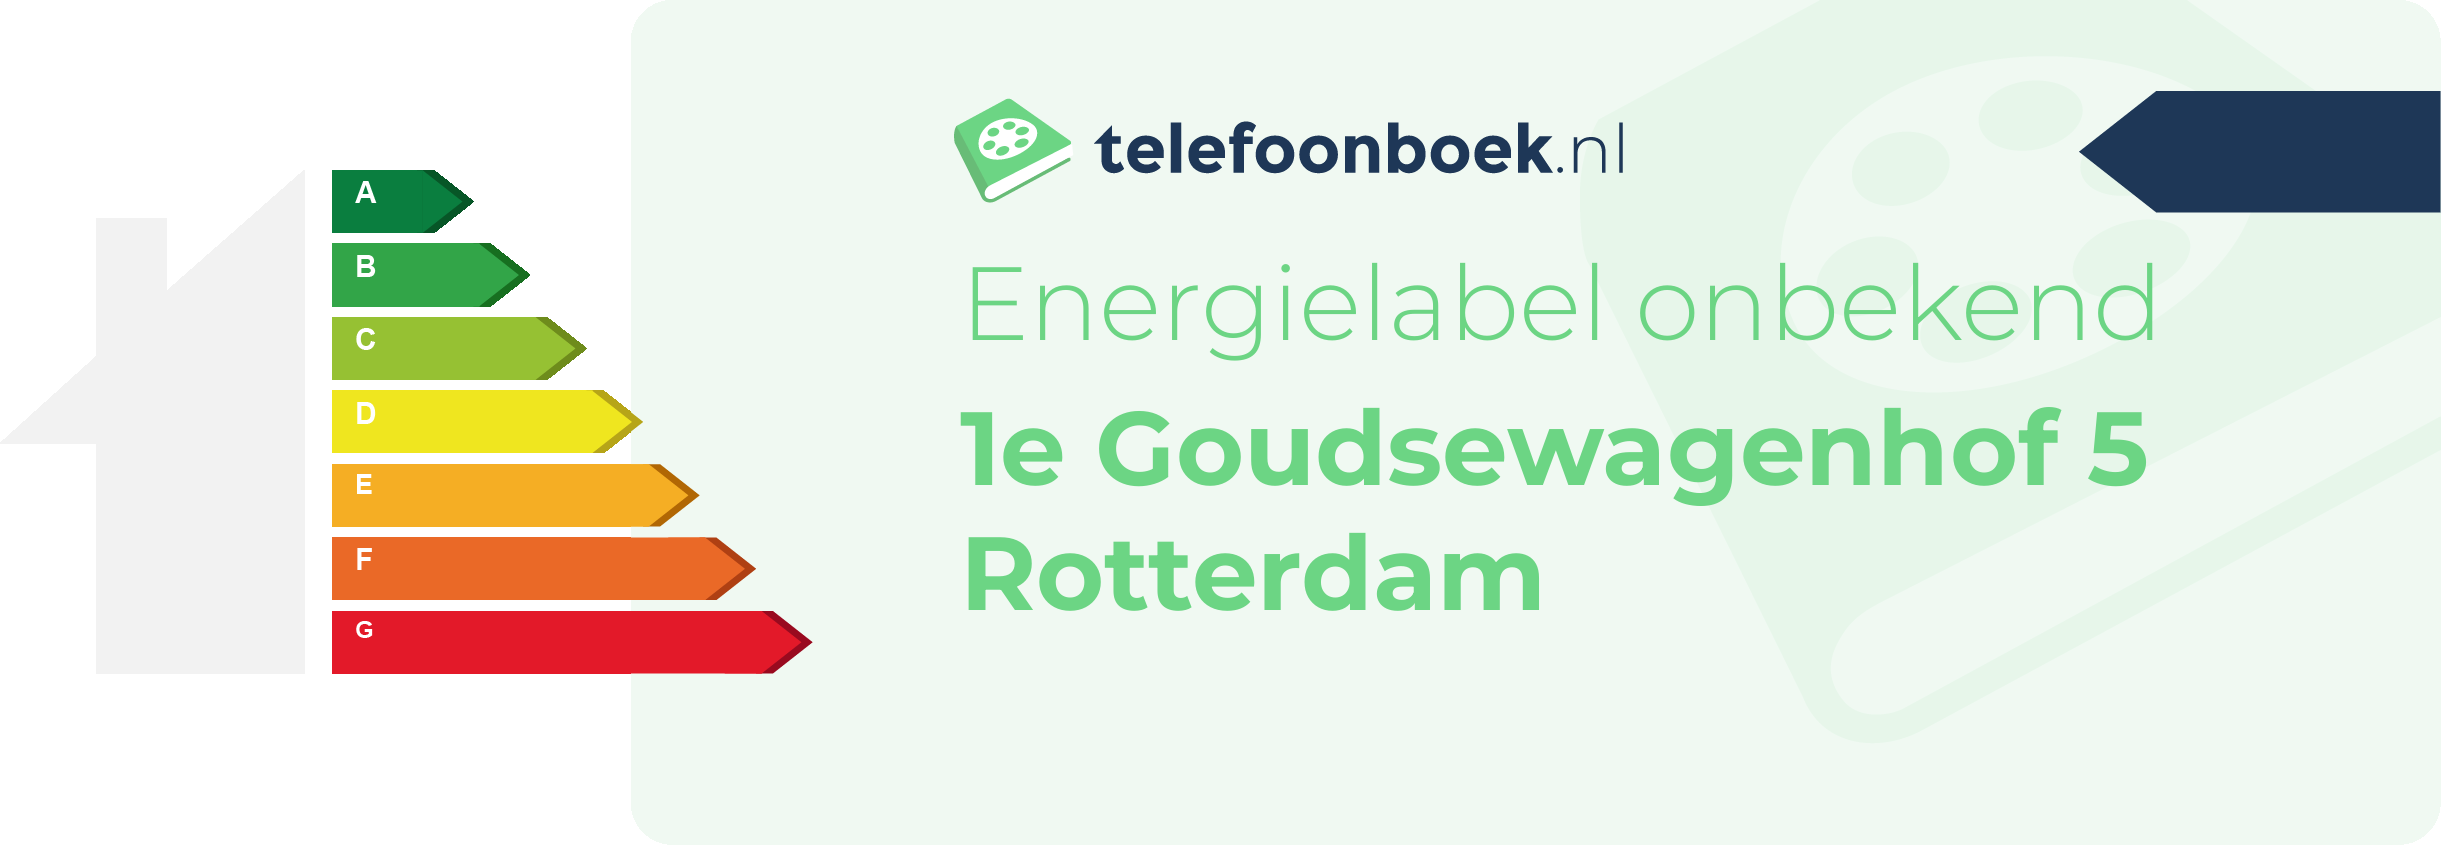 Energielabel 1e Goudsewagenhof 5 Rotterdam